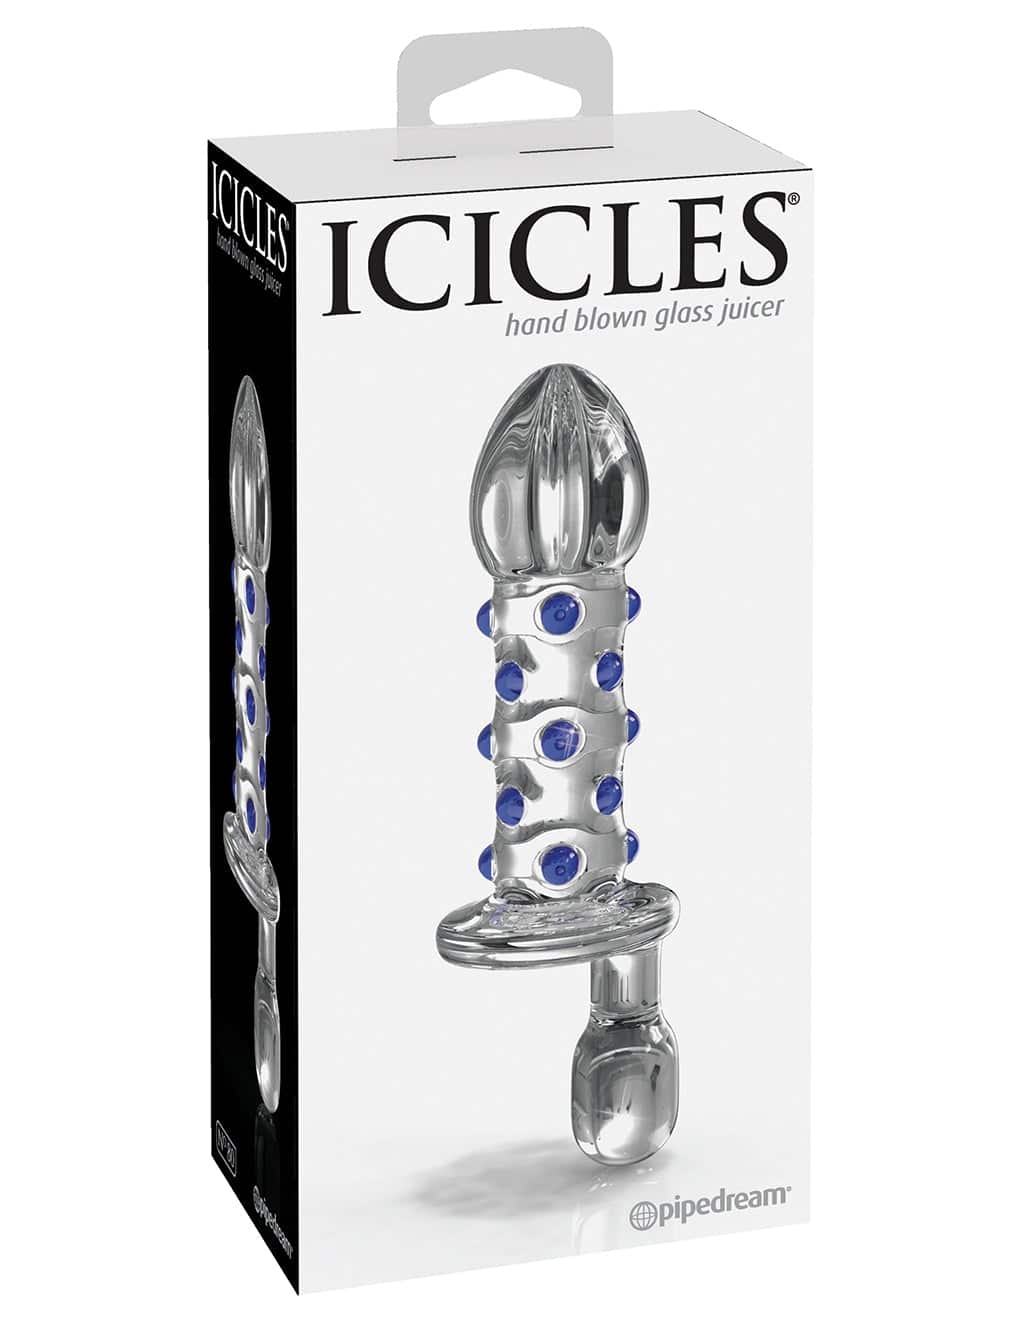 ICICLES NO. 80 Juicer. Slide 3